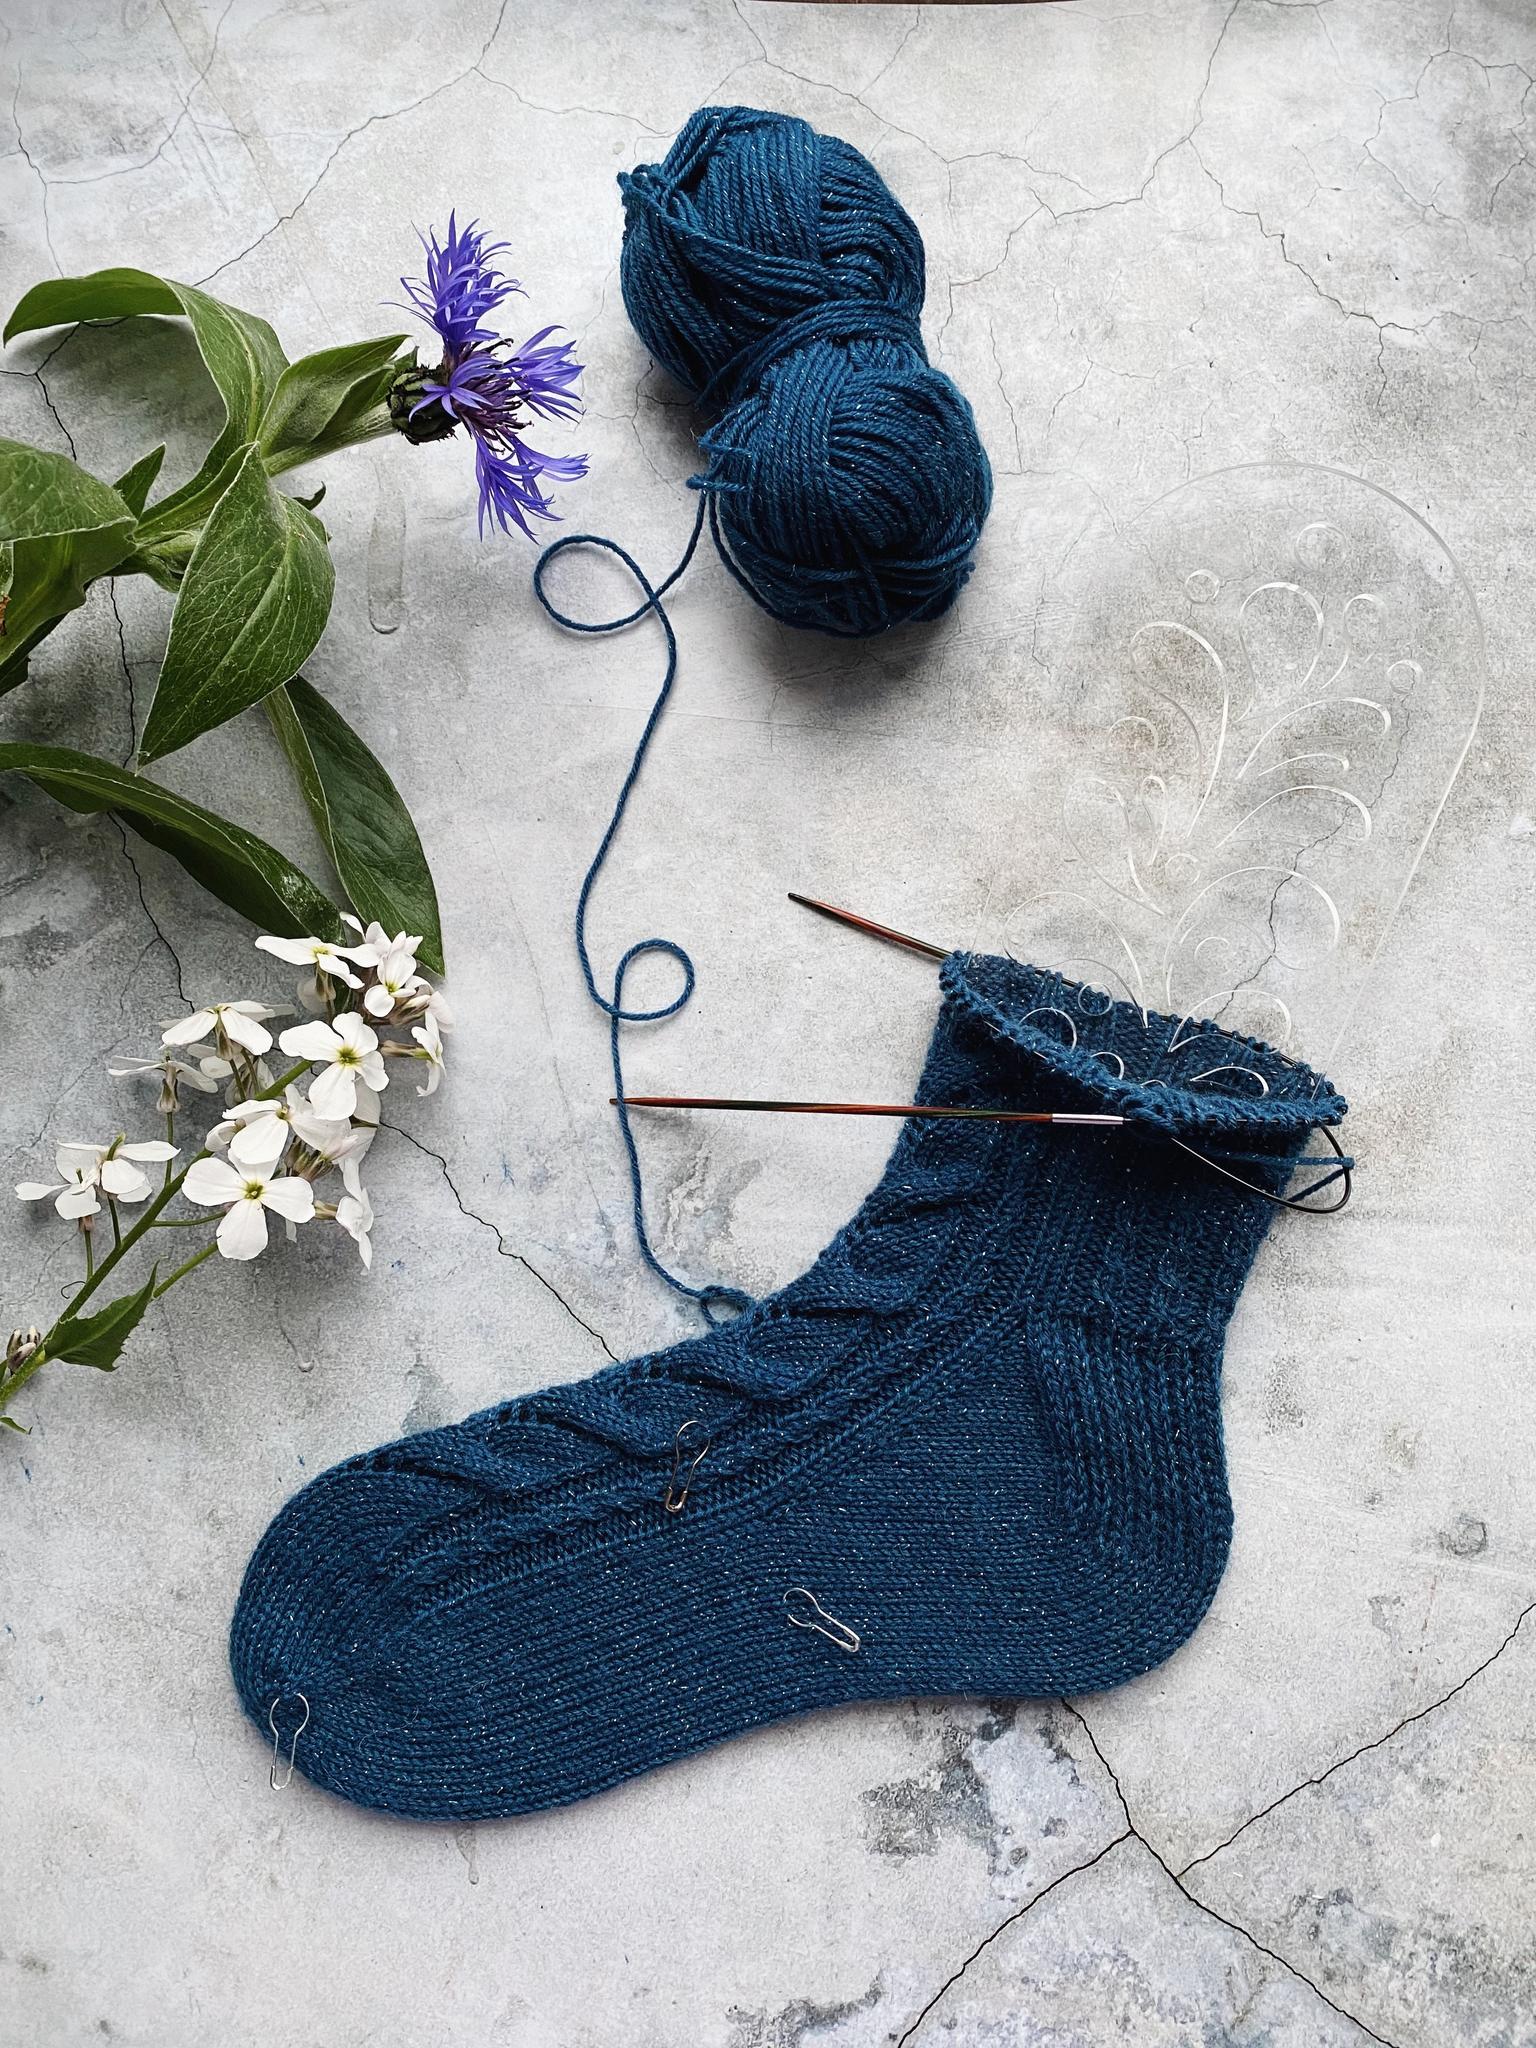 Схемы для вязания носков спицами: авторские модели и бесплатные описания